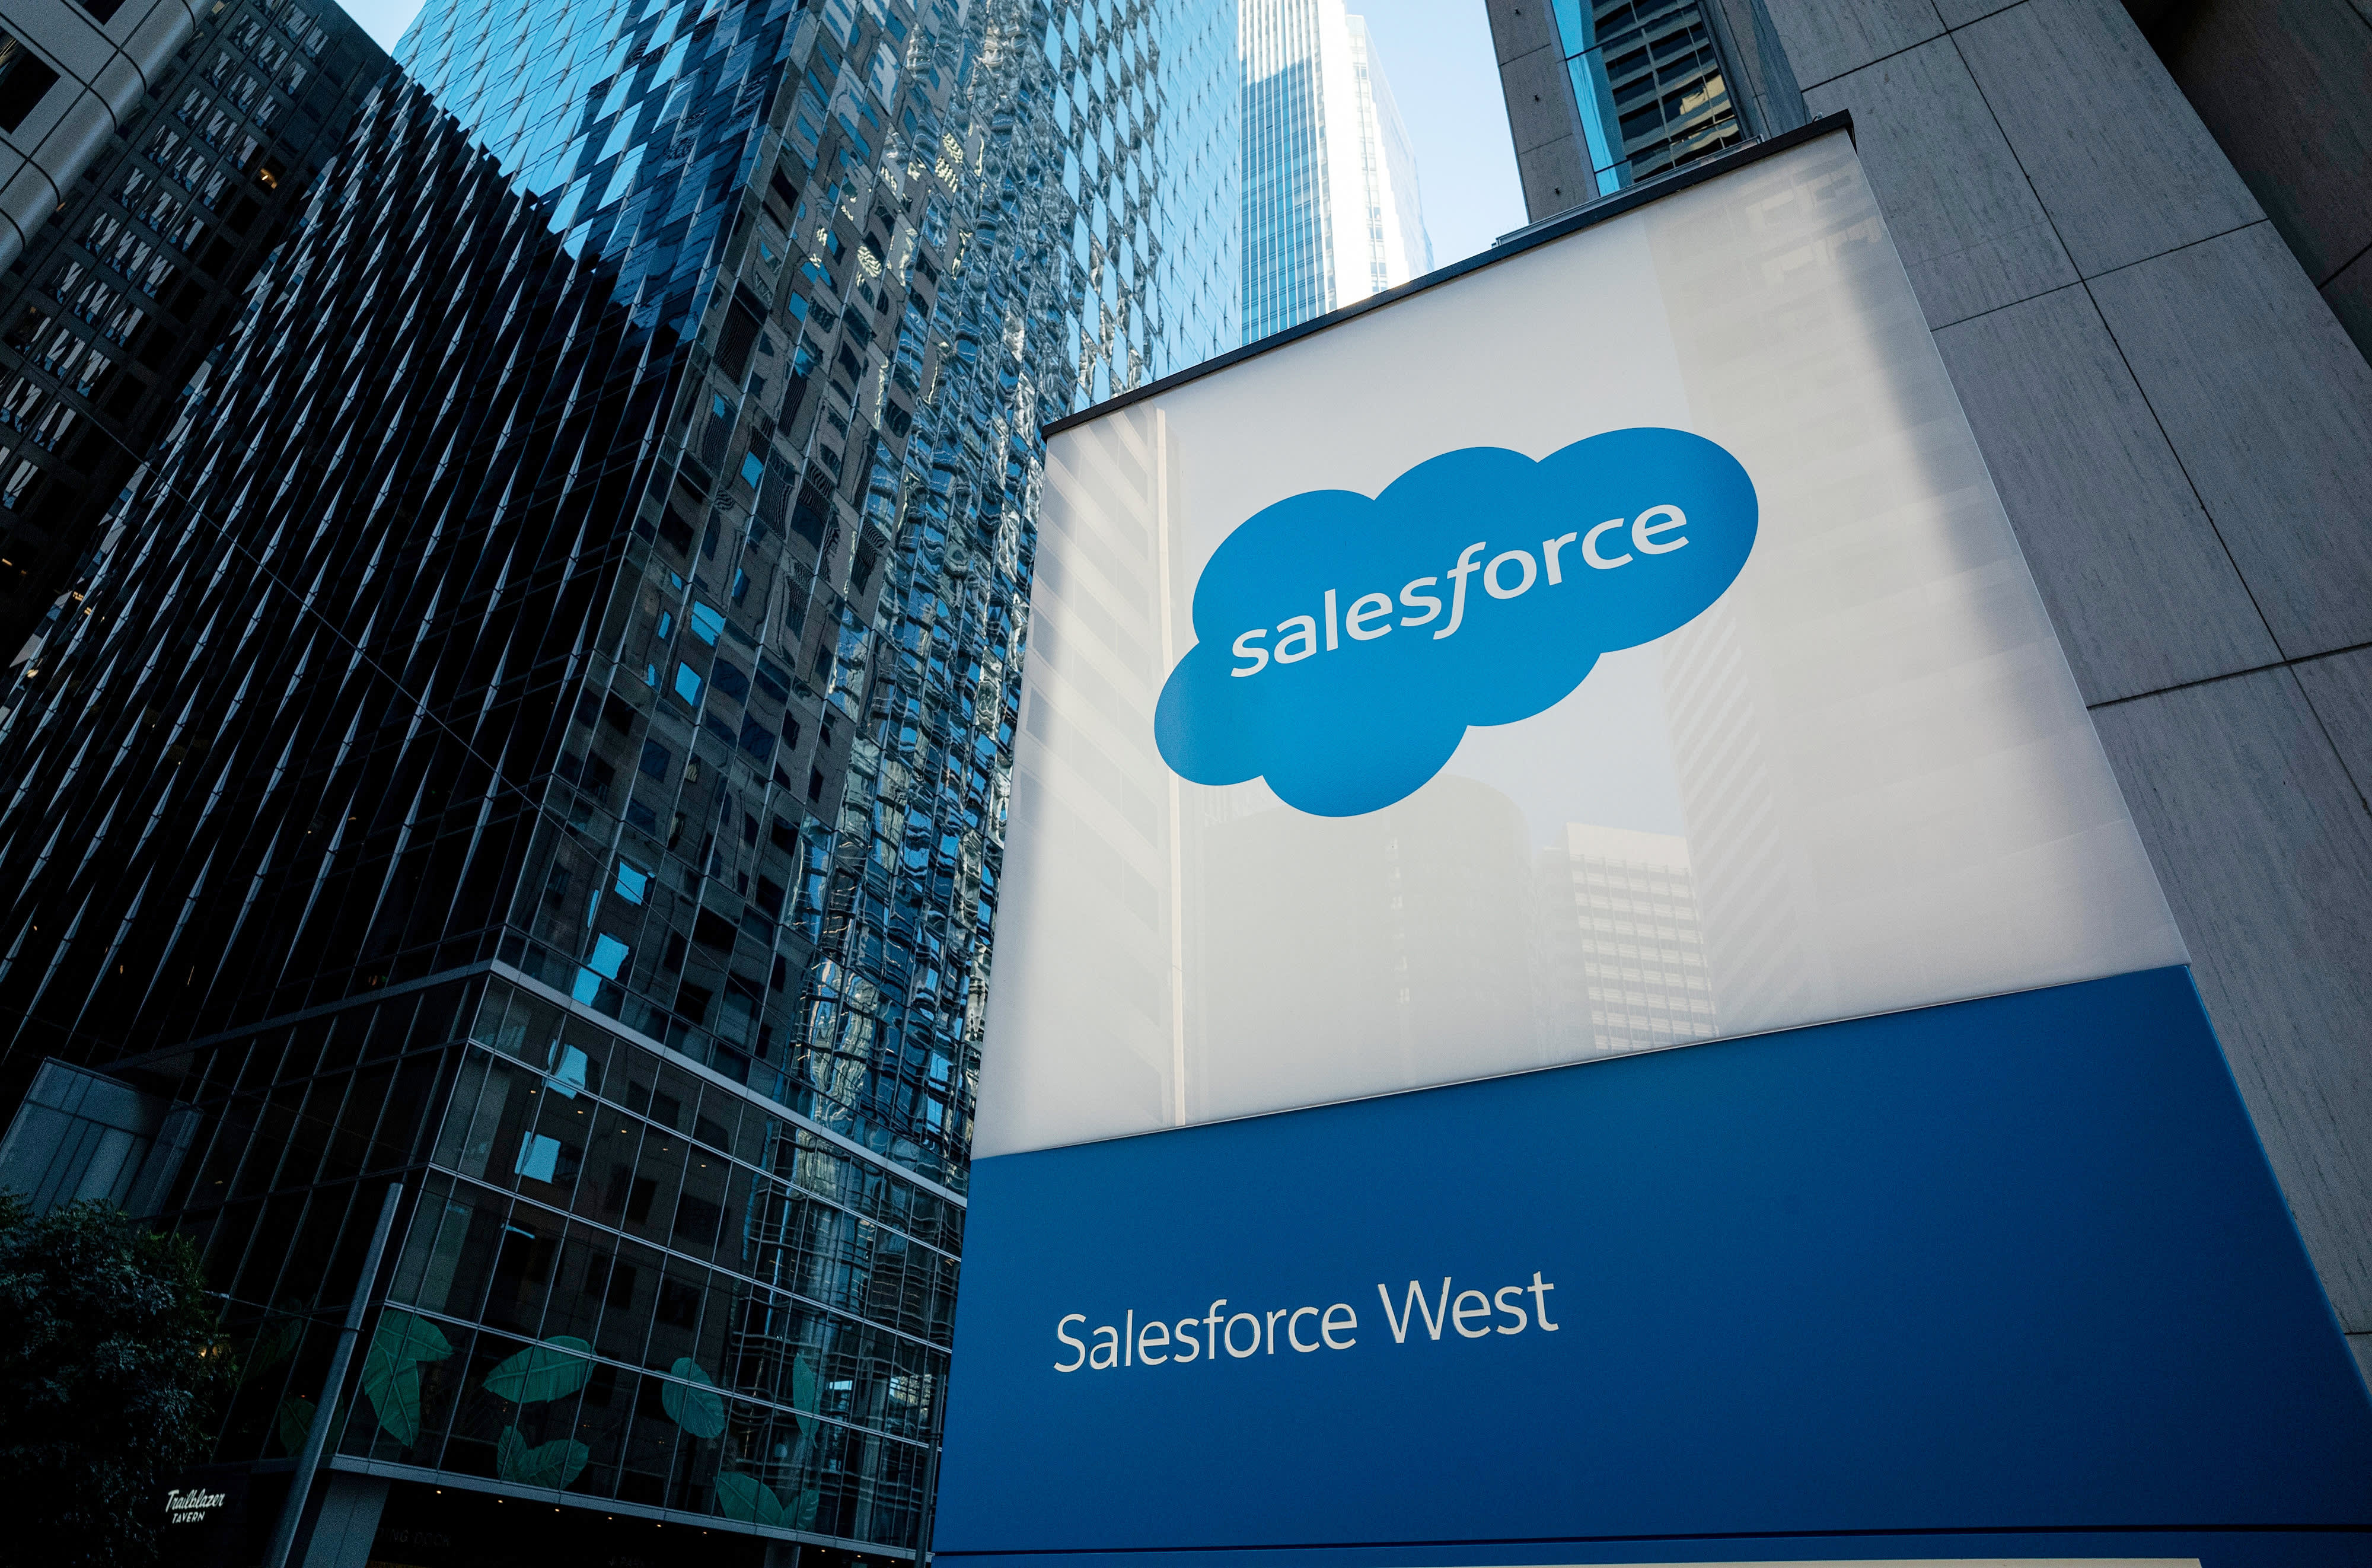 El plan de reducción de costos de Salesforce fue un movimiento muy necesario en la recesión económica